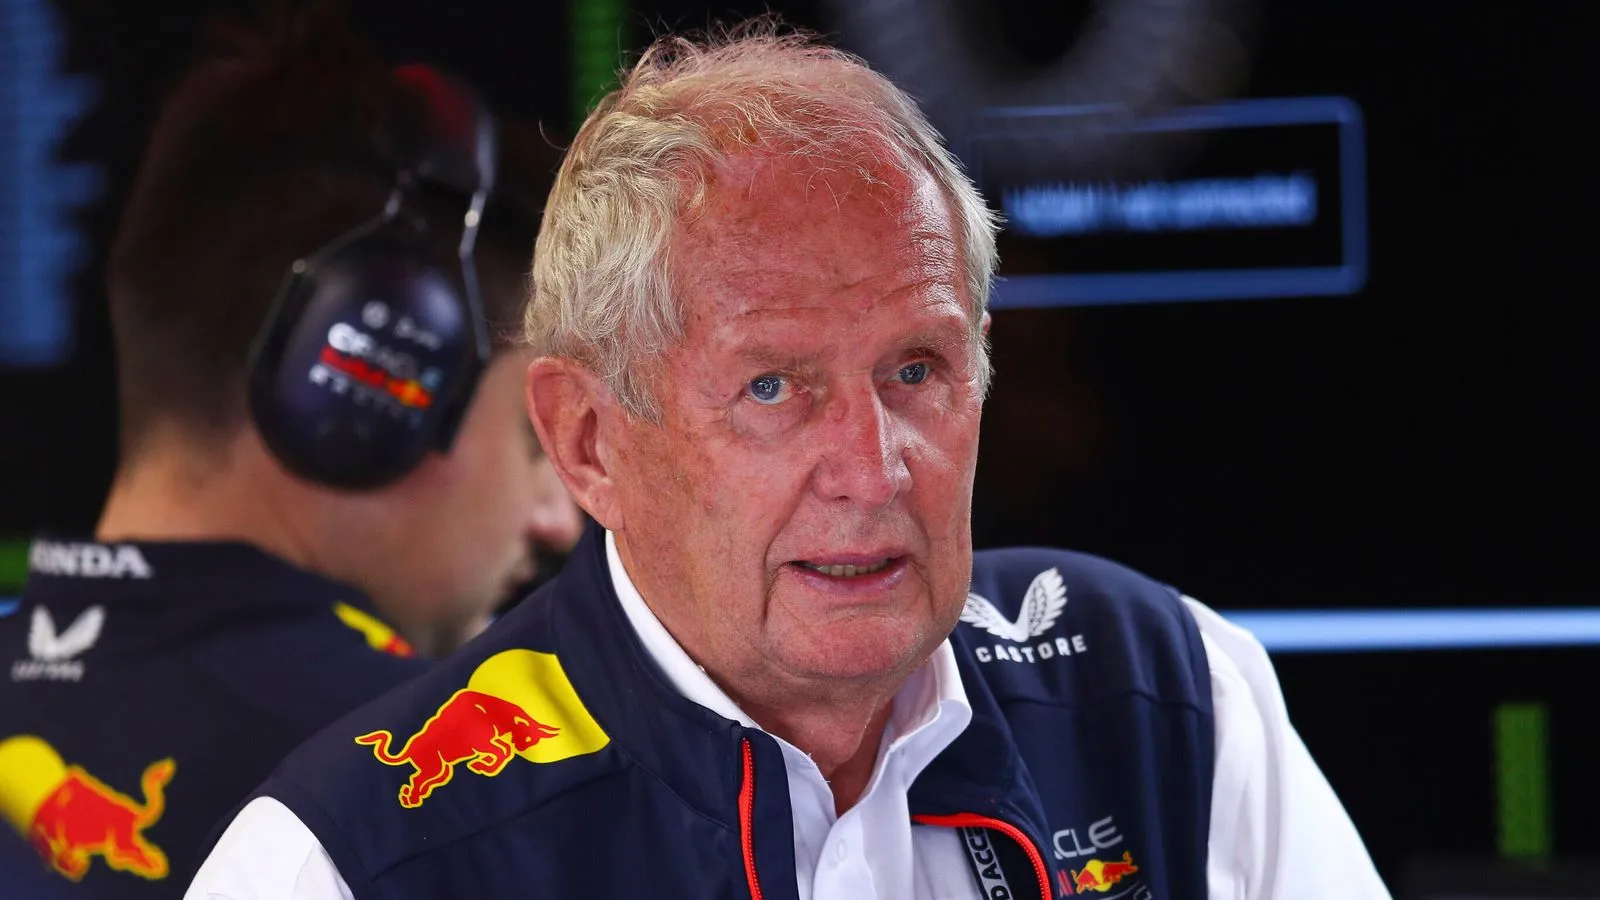 Helmut Marko Cố vấn cấp cao của Red Bull vẫn tự tin dù đội đua gặp vấn đề